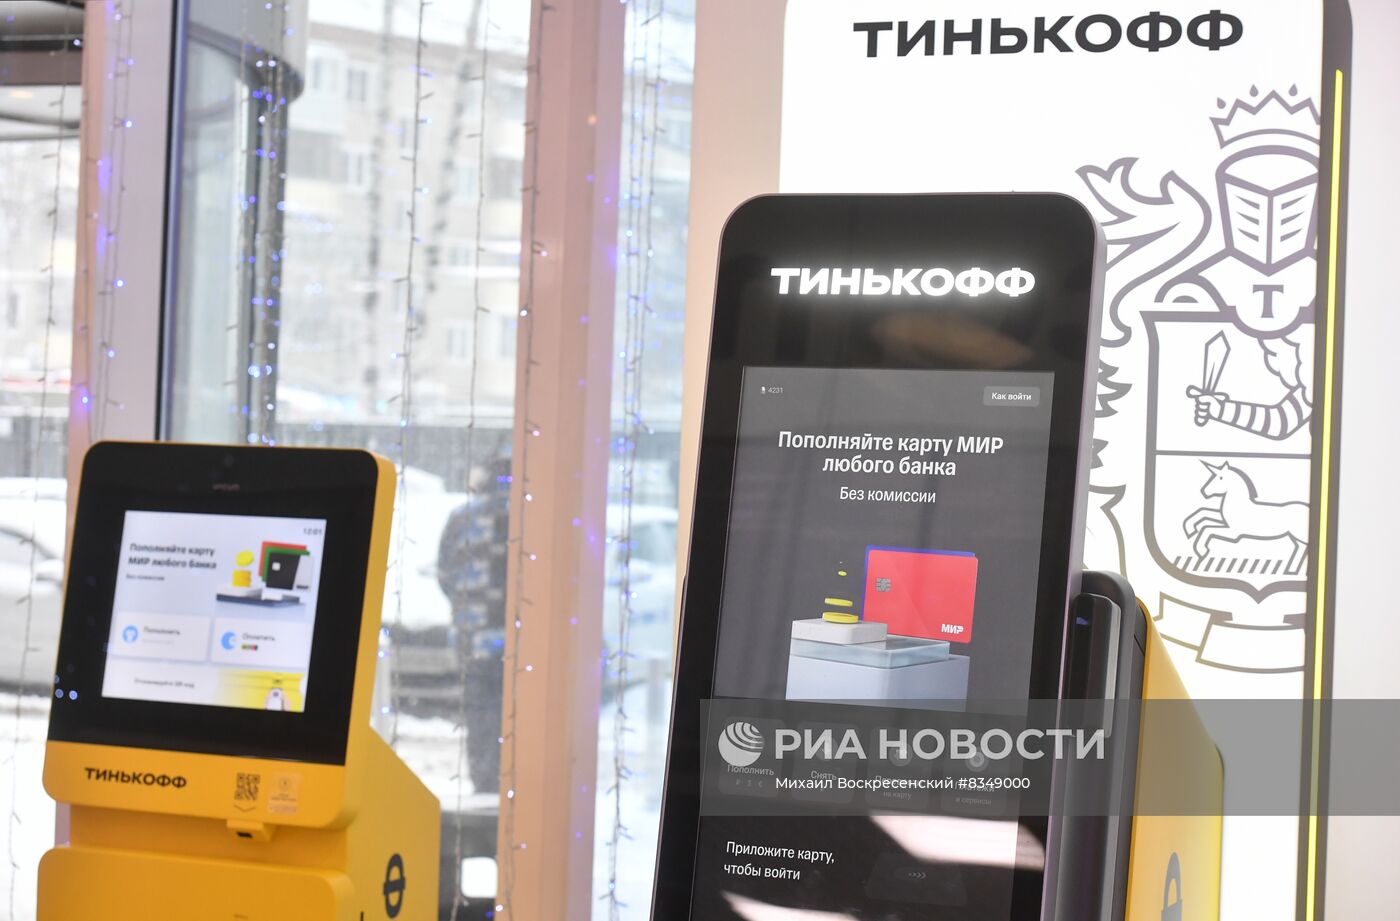 Тинькофф Банк установил в Москве первый банкомат российского производства